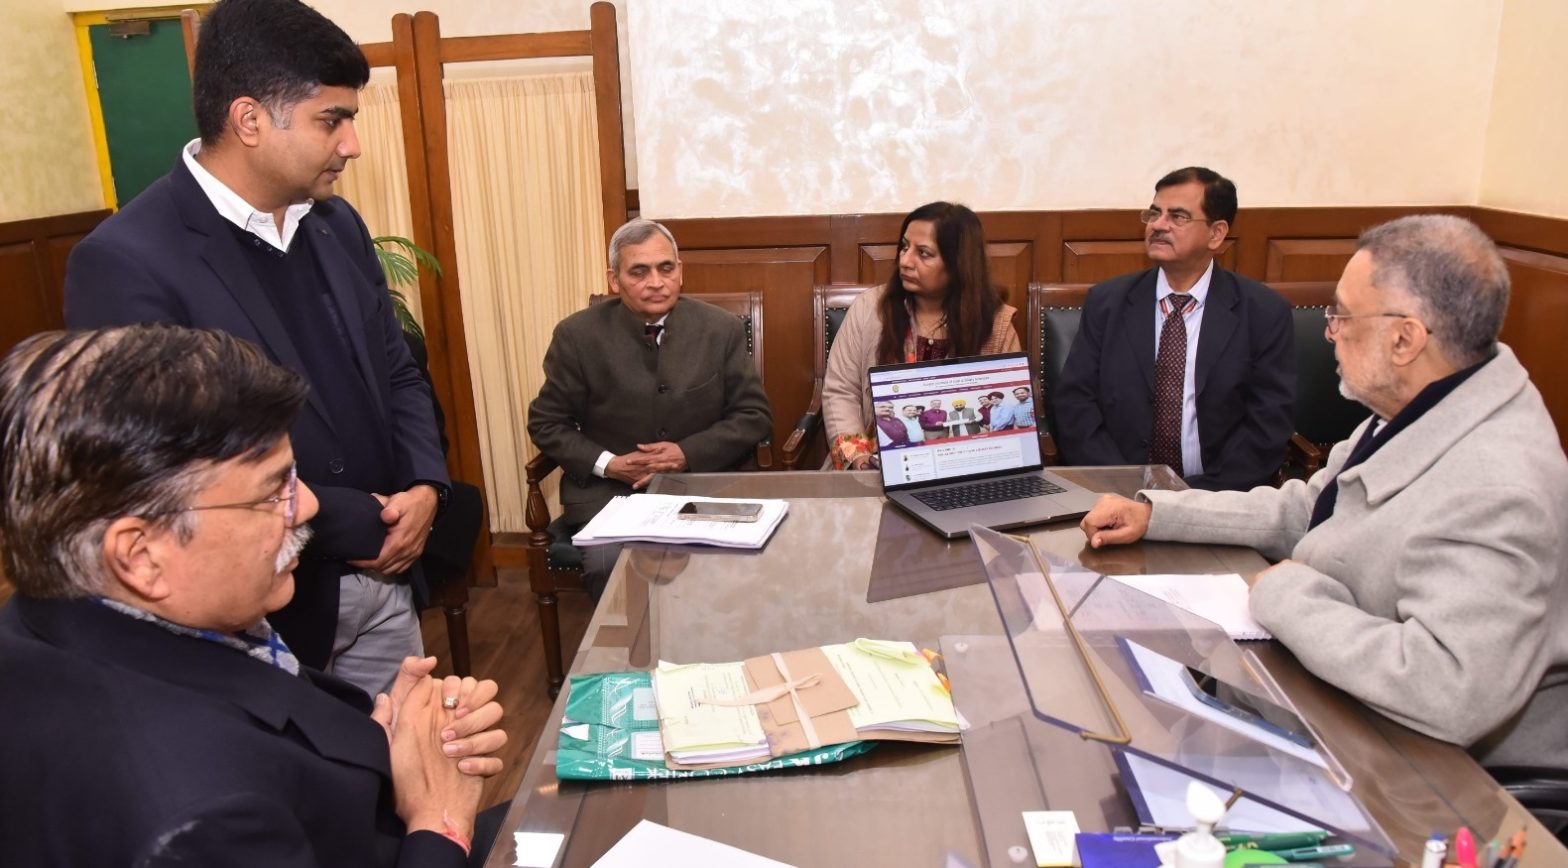 पंजाब के स्वास्थ्य मंत्री ने पंजाब इंस्टीट्यूट ऑफ लिवर एंड बिलीरी साइंसेज की वेबसाइट की लॉन्च